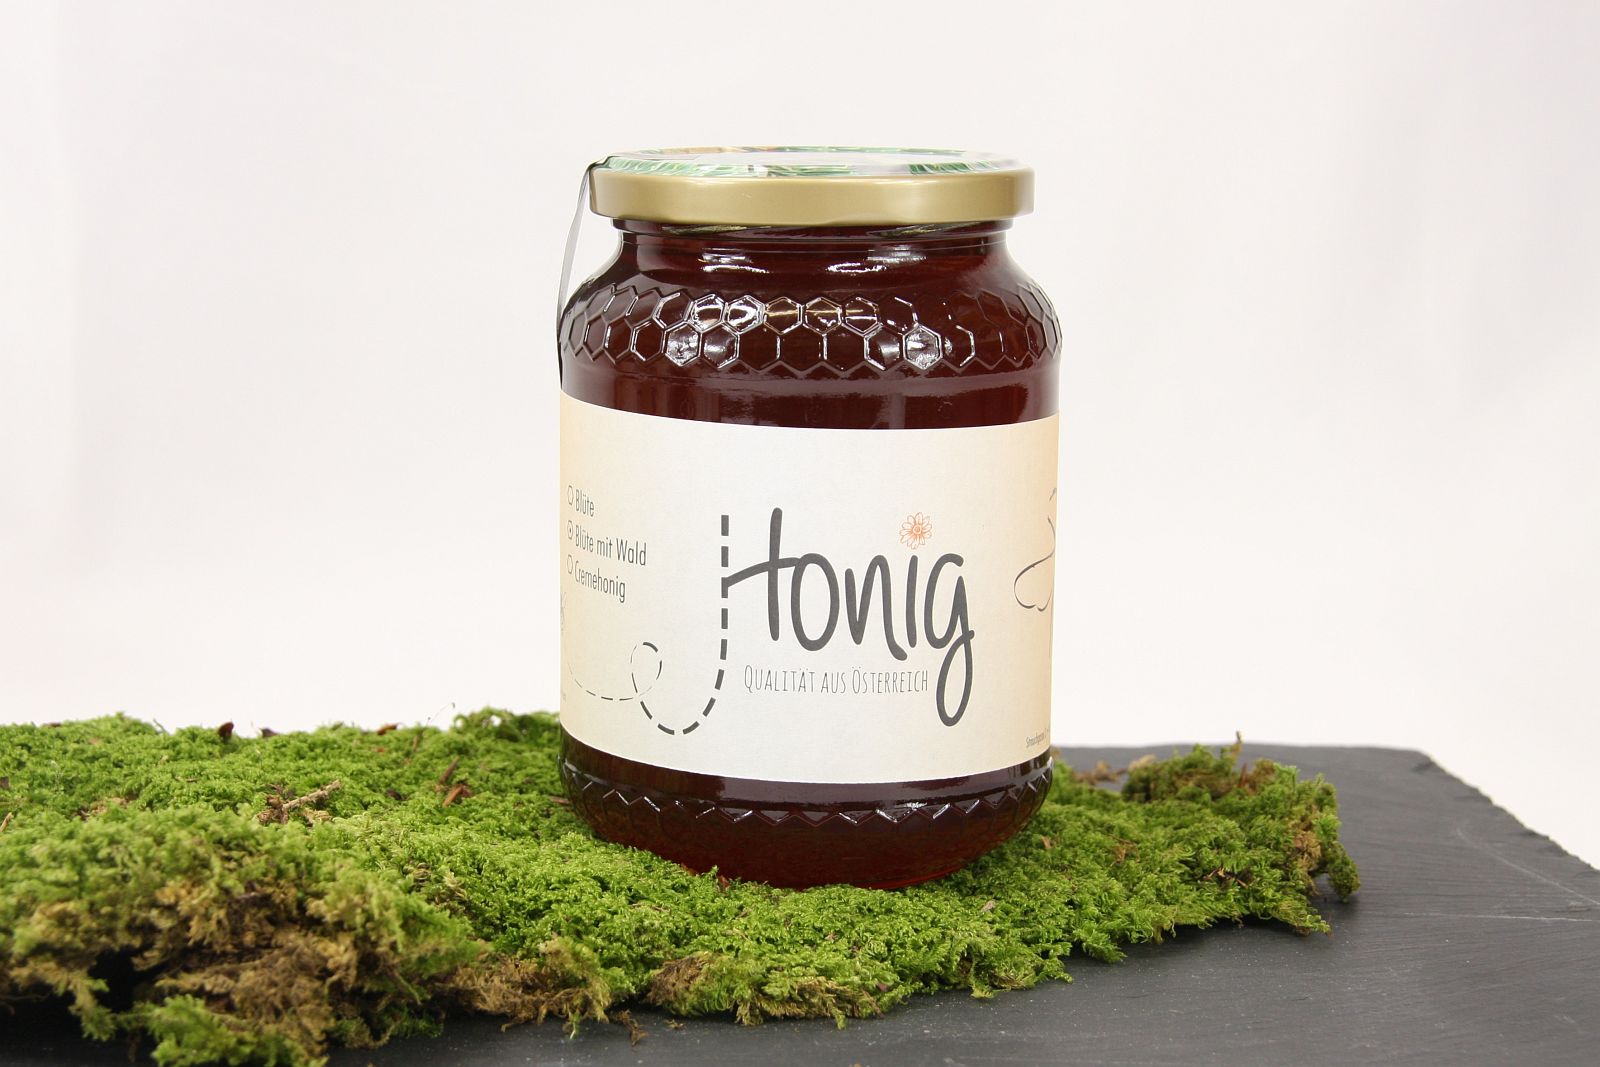 Honig "Blüte mit Wald" 1kg